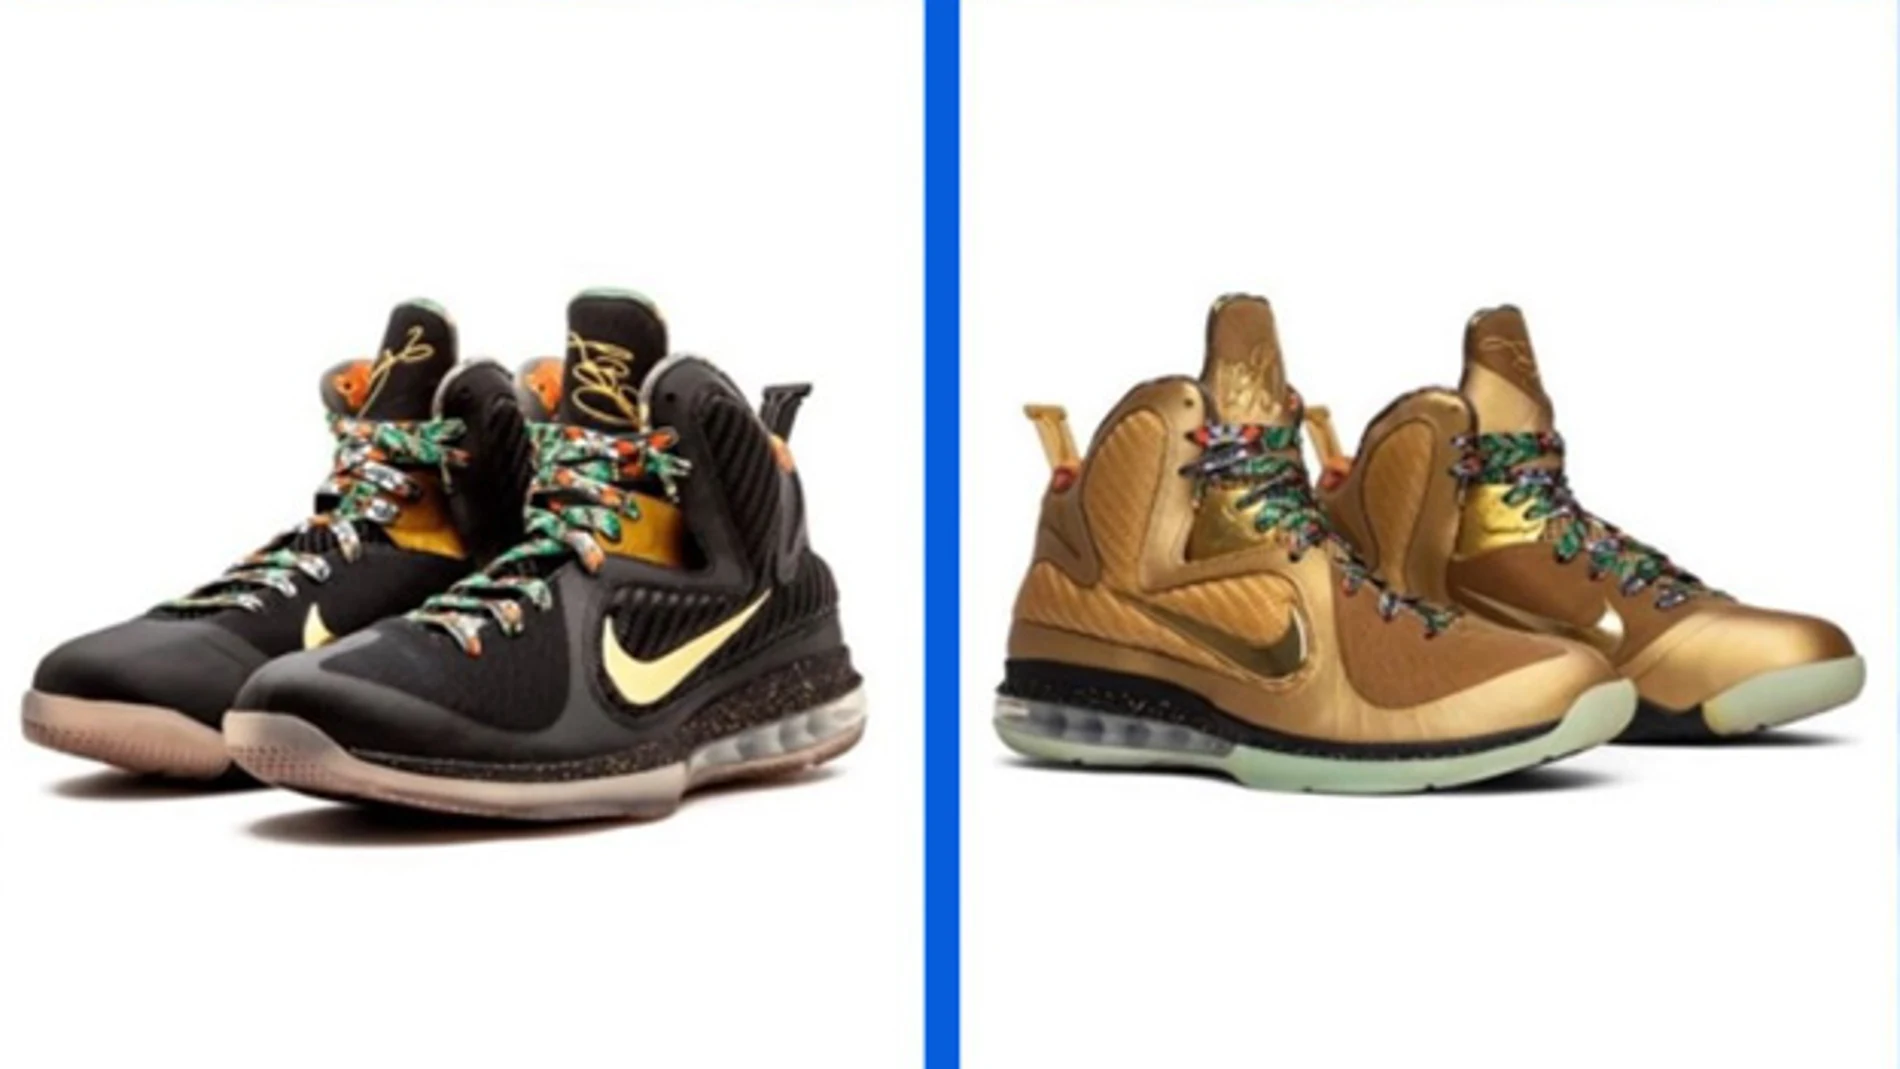 Los dos modelos de las zapatillas Watch The Trone Nike LeBron 9.